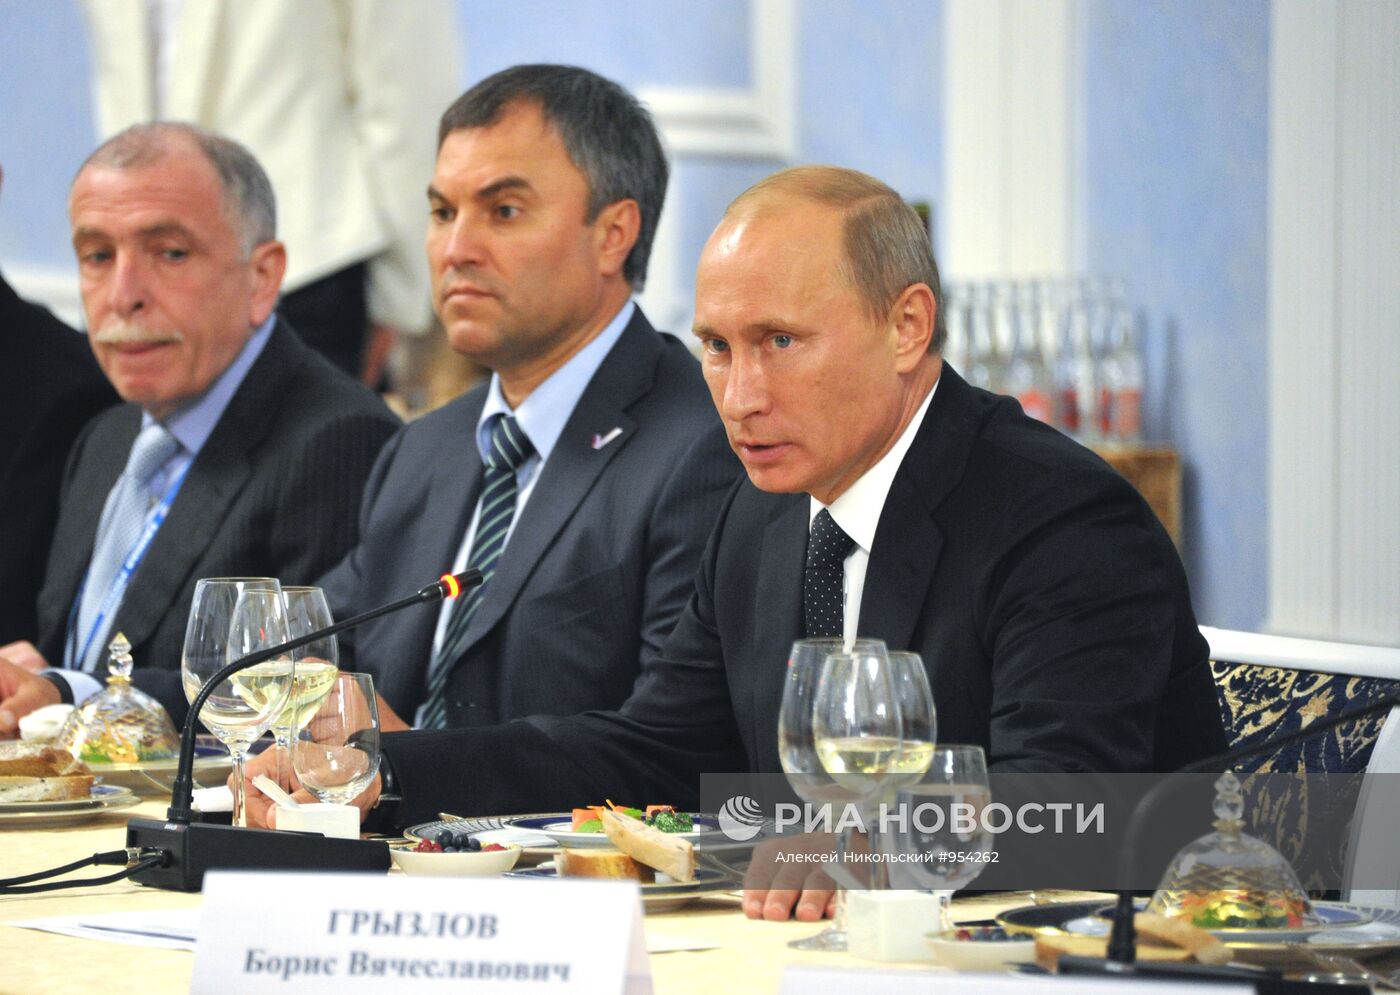 В.Путин продолжил встречу с руководителями регионов СЗФО